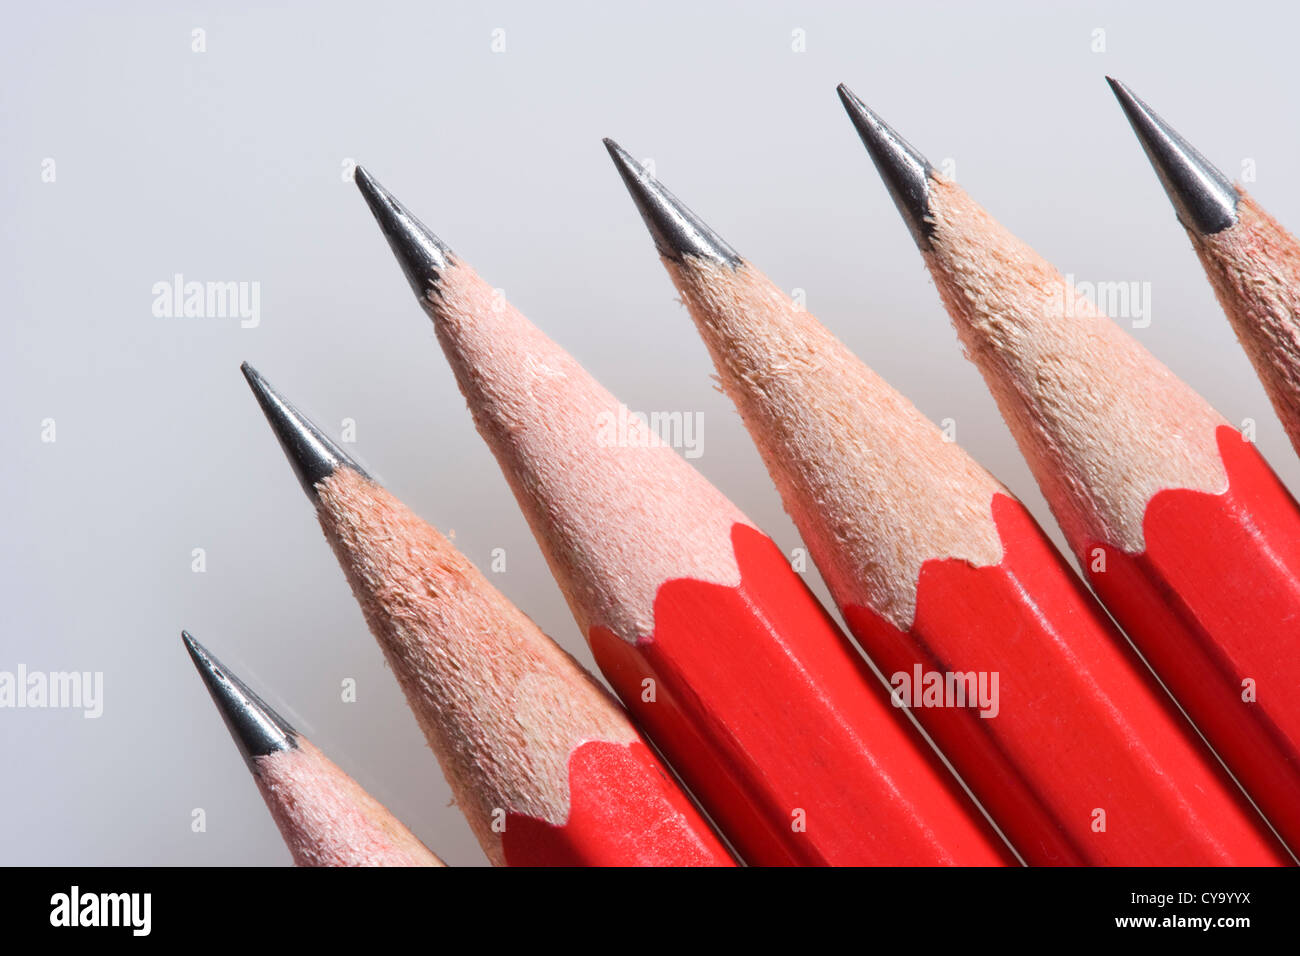 Pencils. Stock Photo